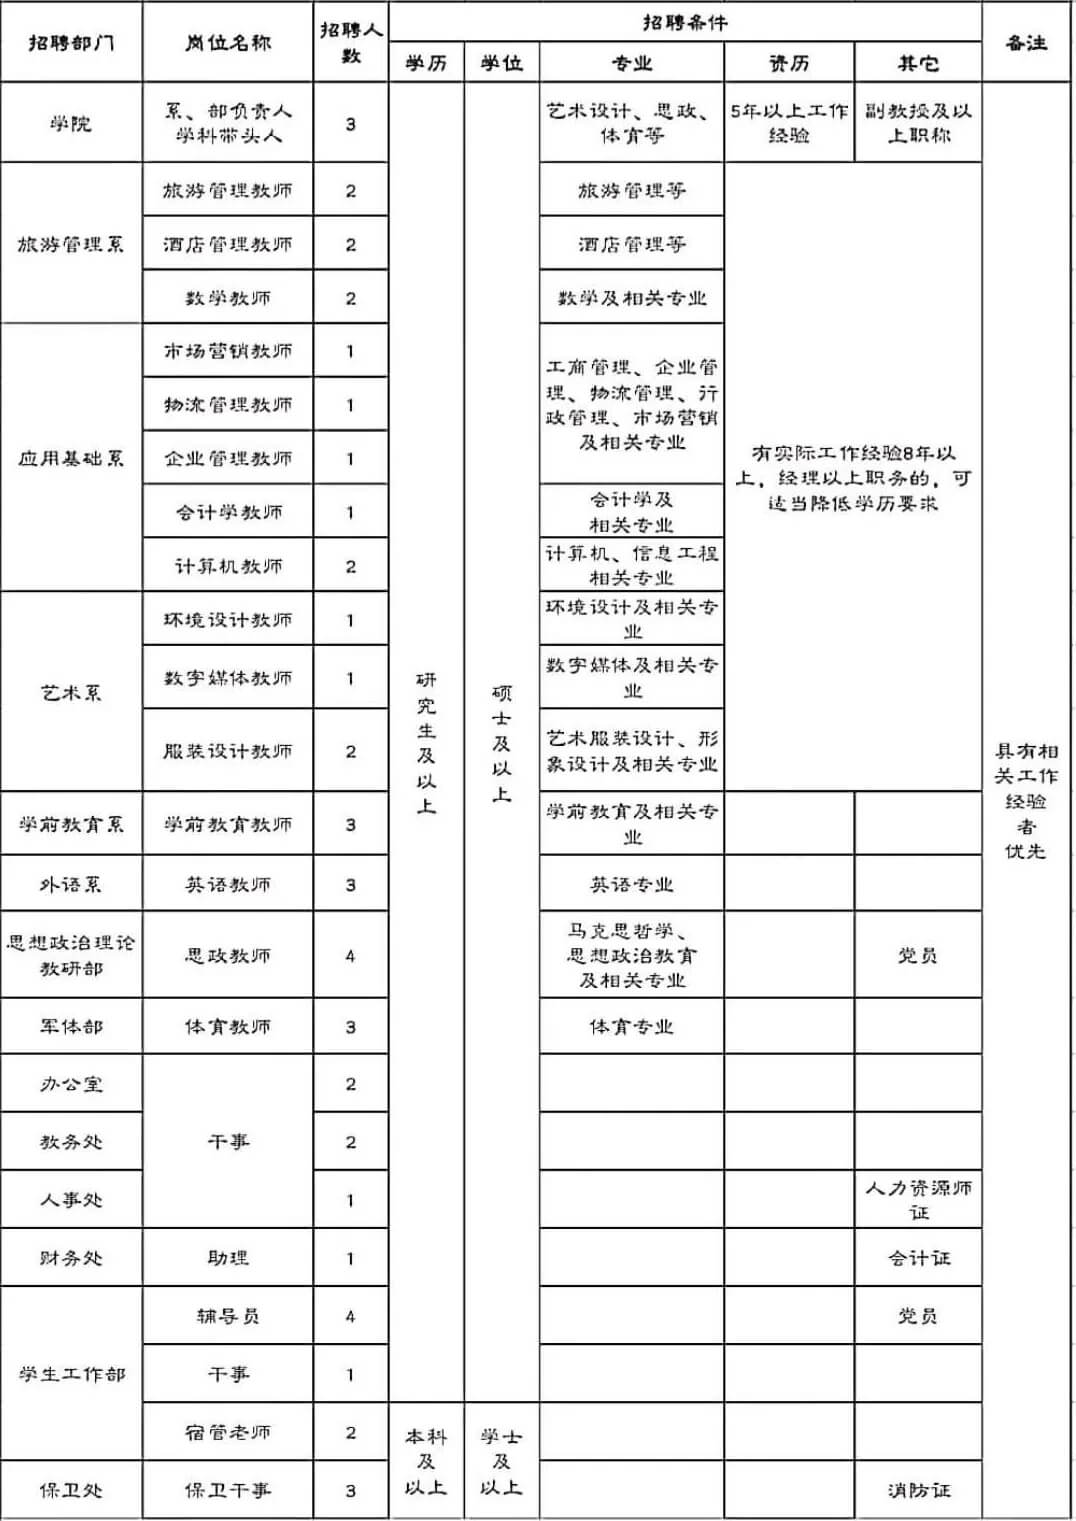 黑龙江国编教师考试资讯